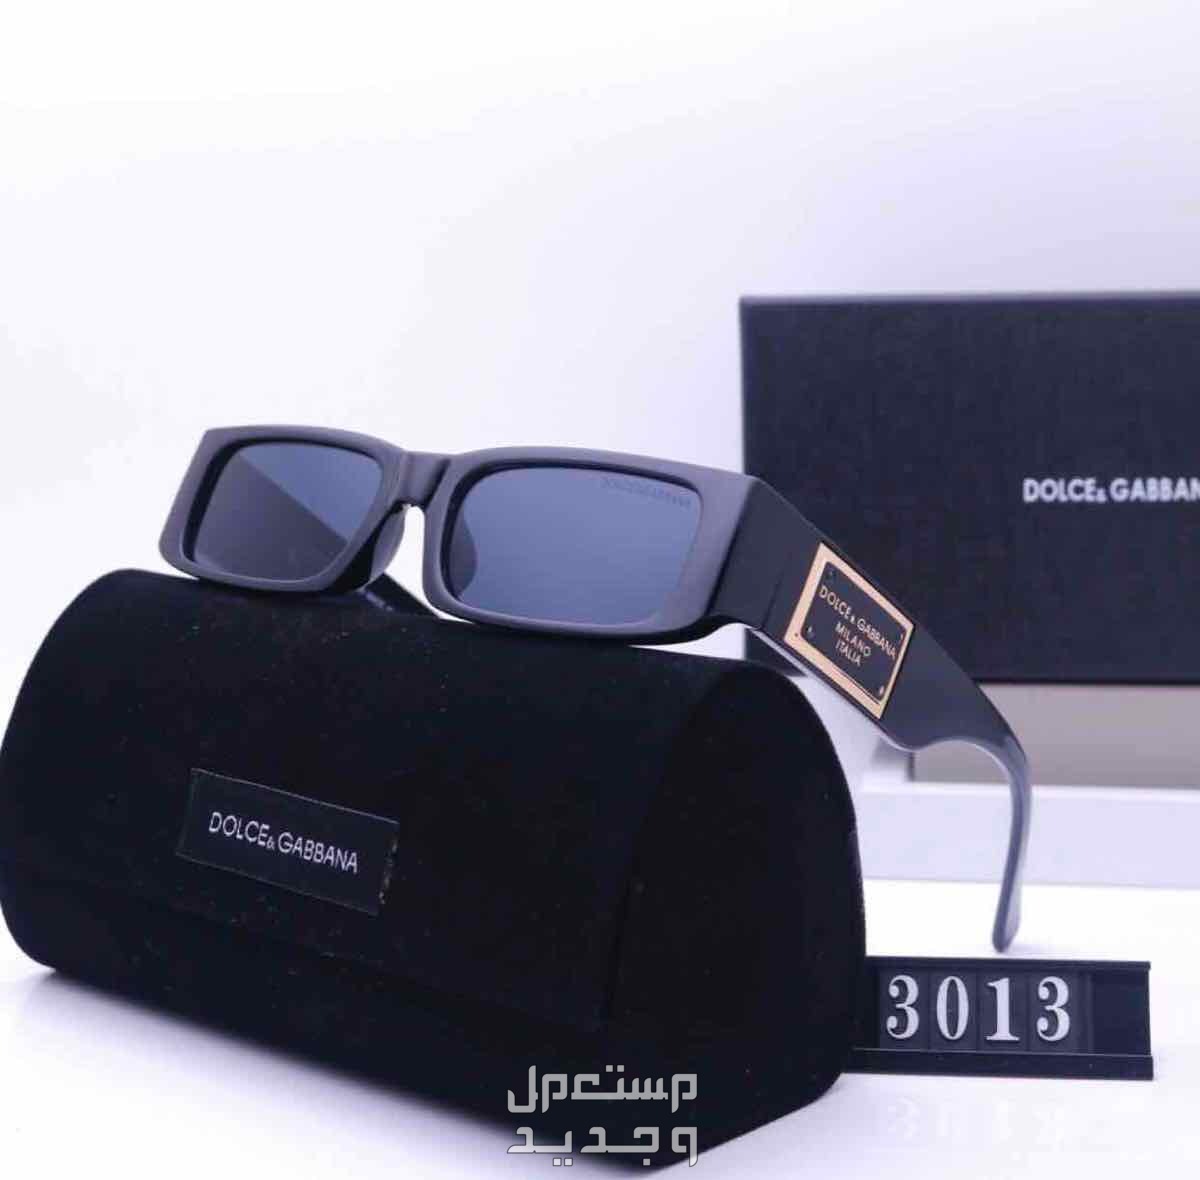 نظارات شمسية ماركات عالمية درجه اولي حماية من الاشعة فوق البنفسجية الضارة 100%؜ UVprotection في الرياض بسعر 150 ريال سعودي